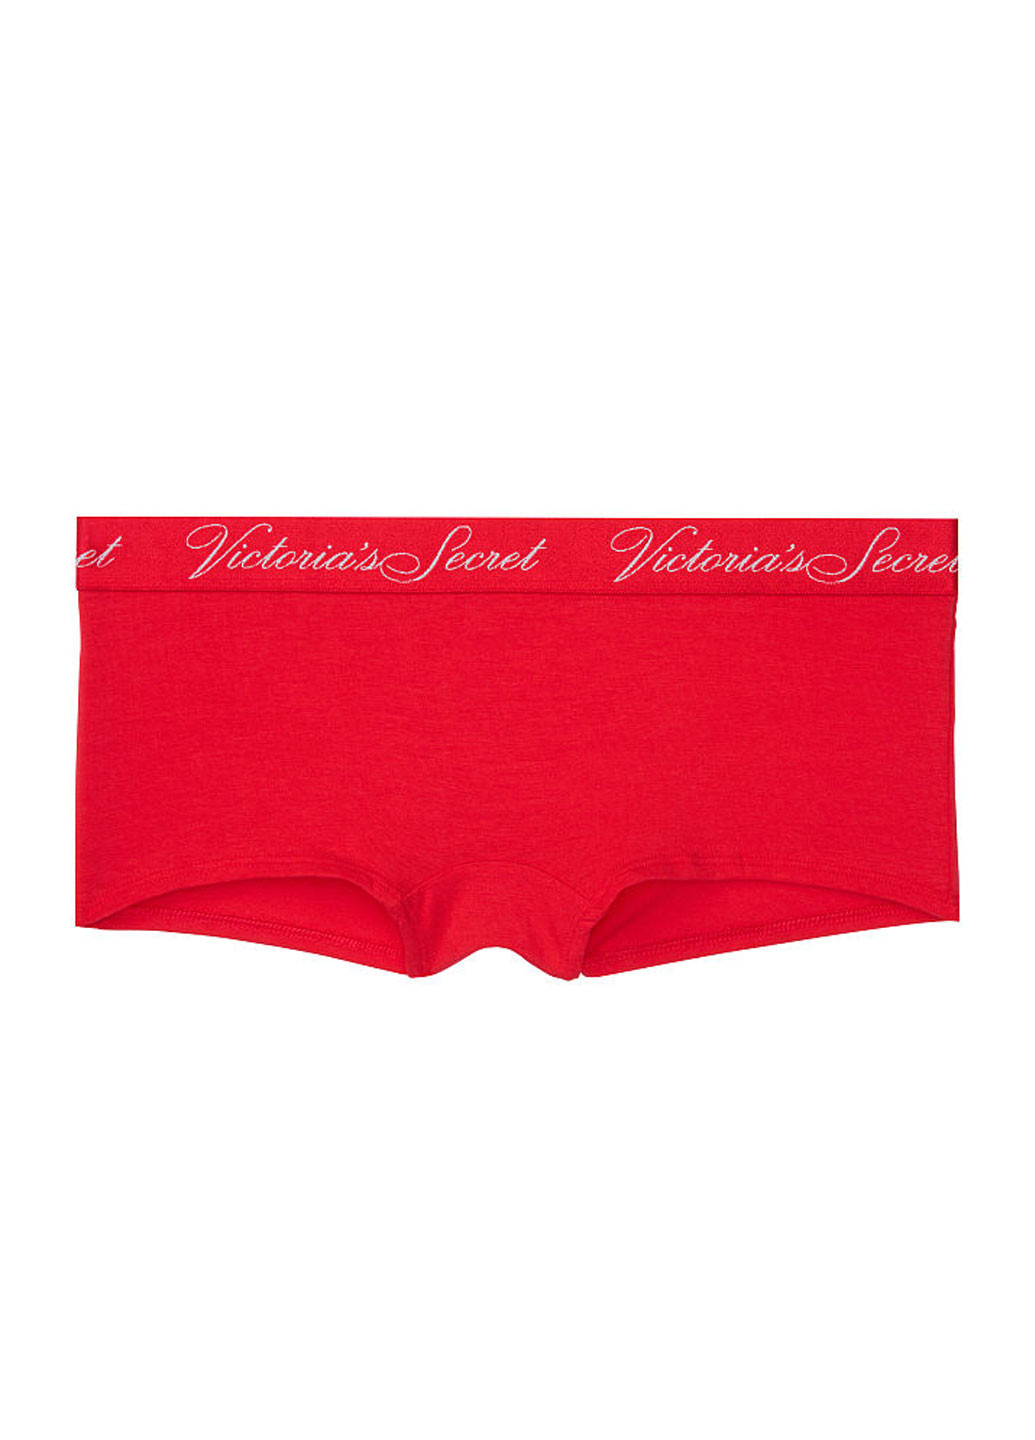 Трусики Victoria's Secret трусики-шорты красные повседневные трикотаж